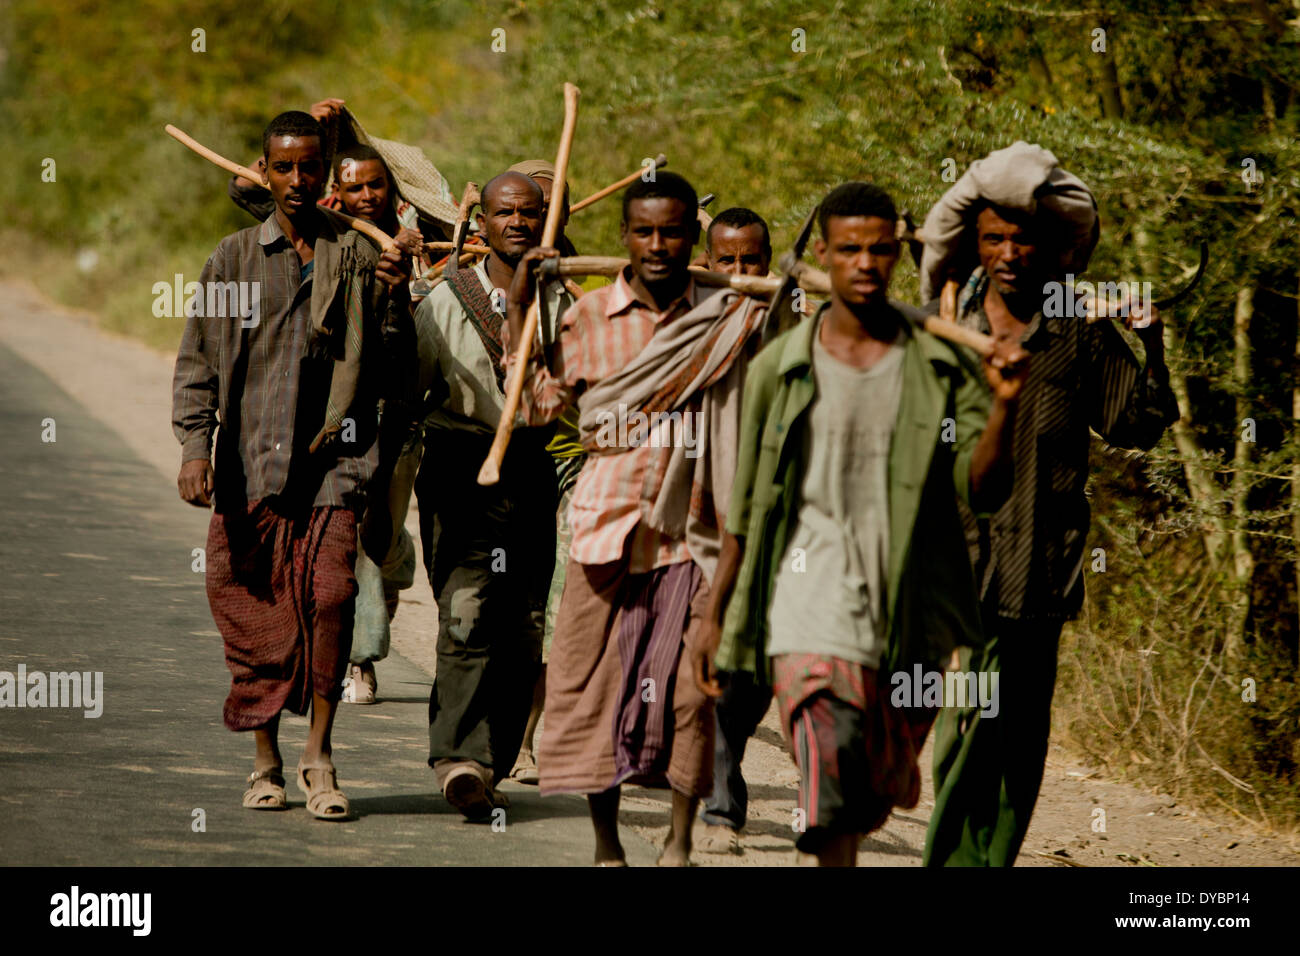 Travailleurs éthiopiens de l'Afrique à marcher le long de la route poussiéreuse Banque D'Images